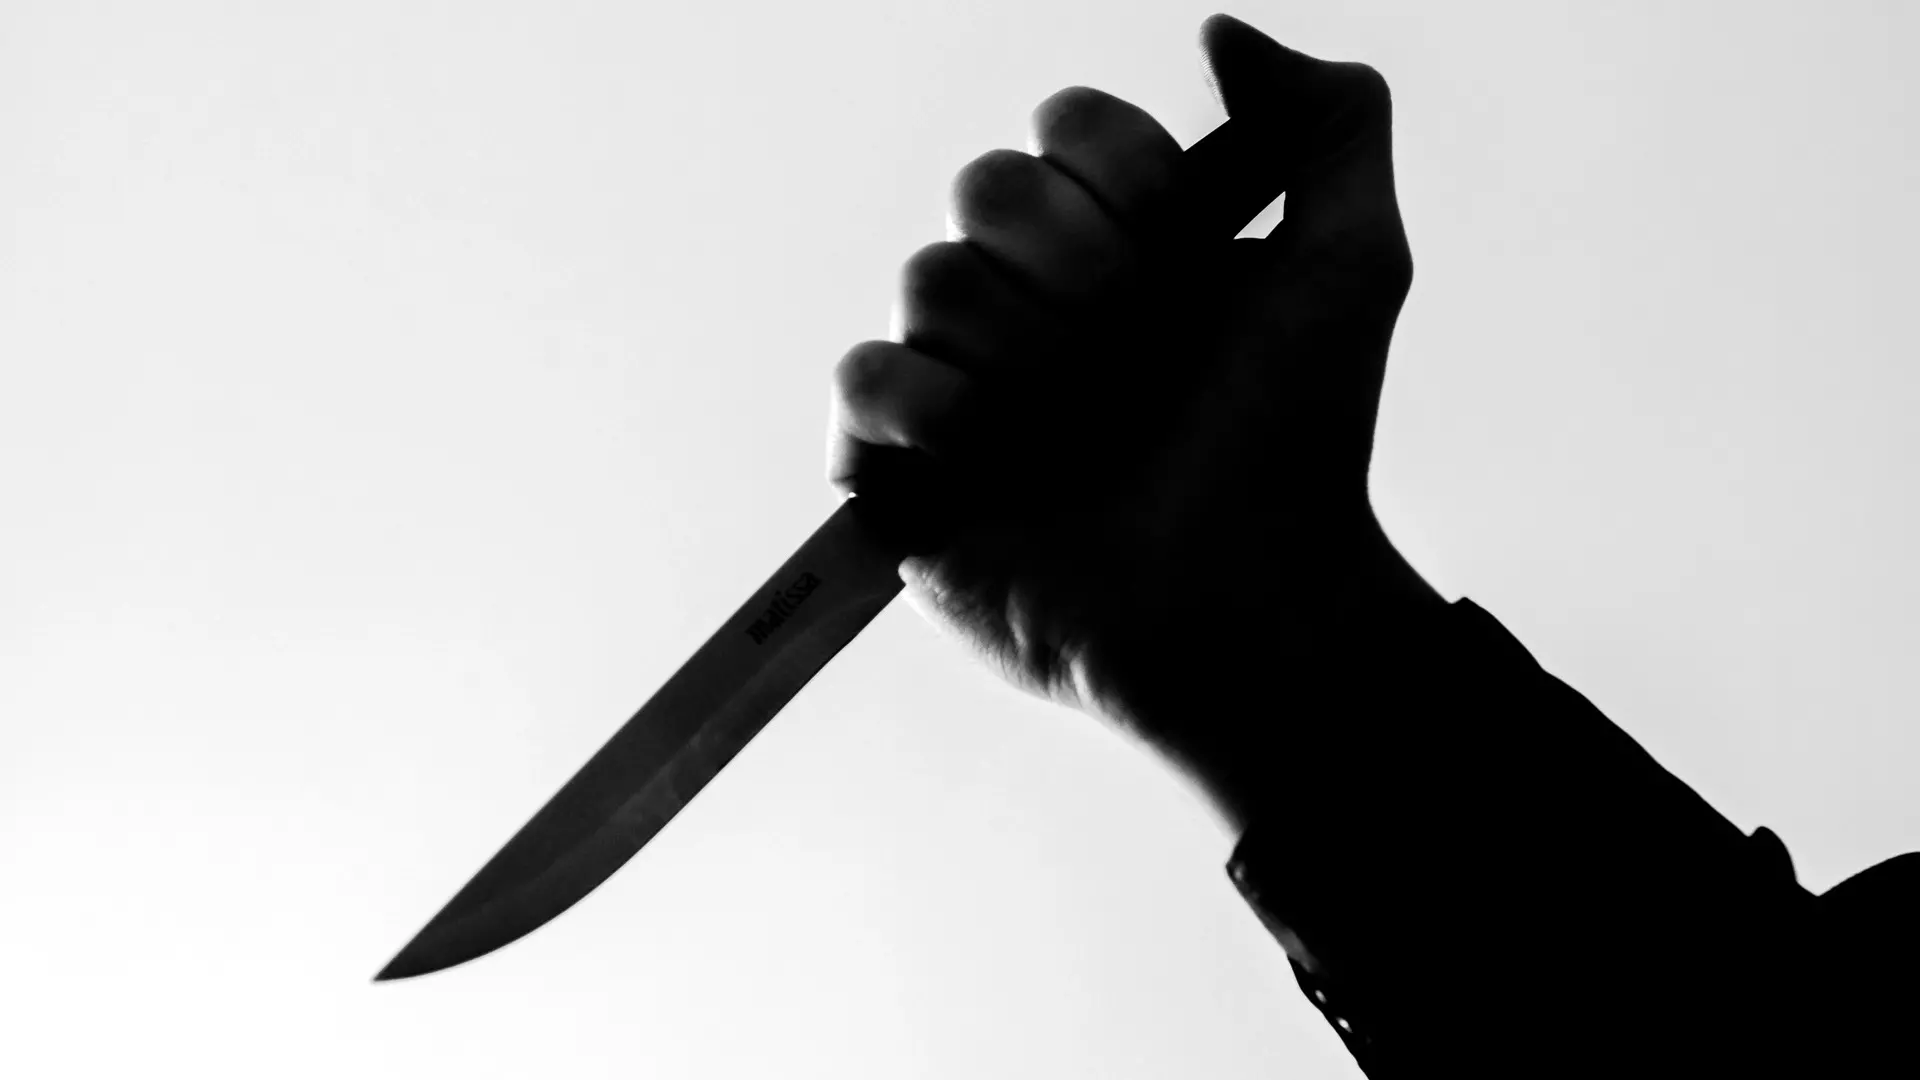 Мужчина в респираторе с ножом пытался ограбить магазин в поселке Карелии